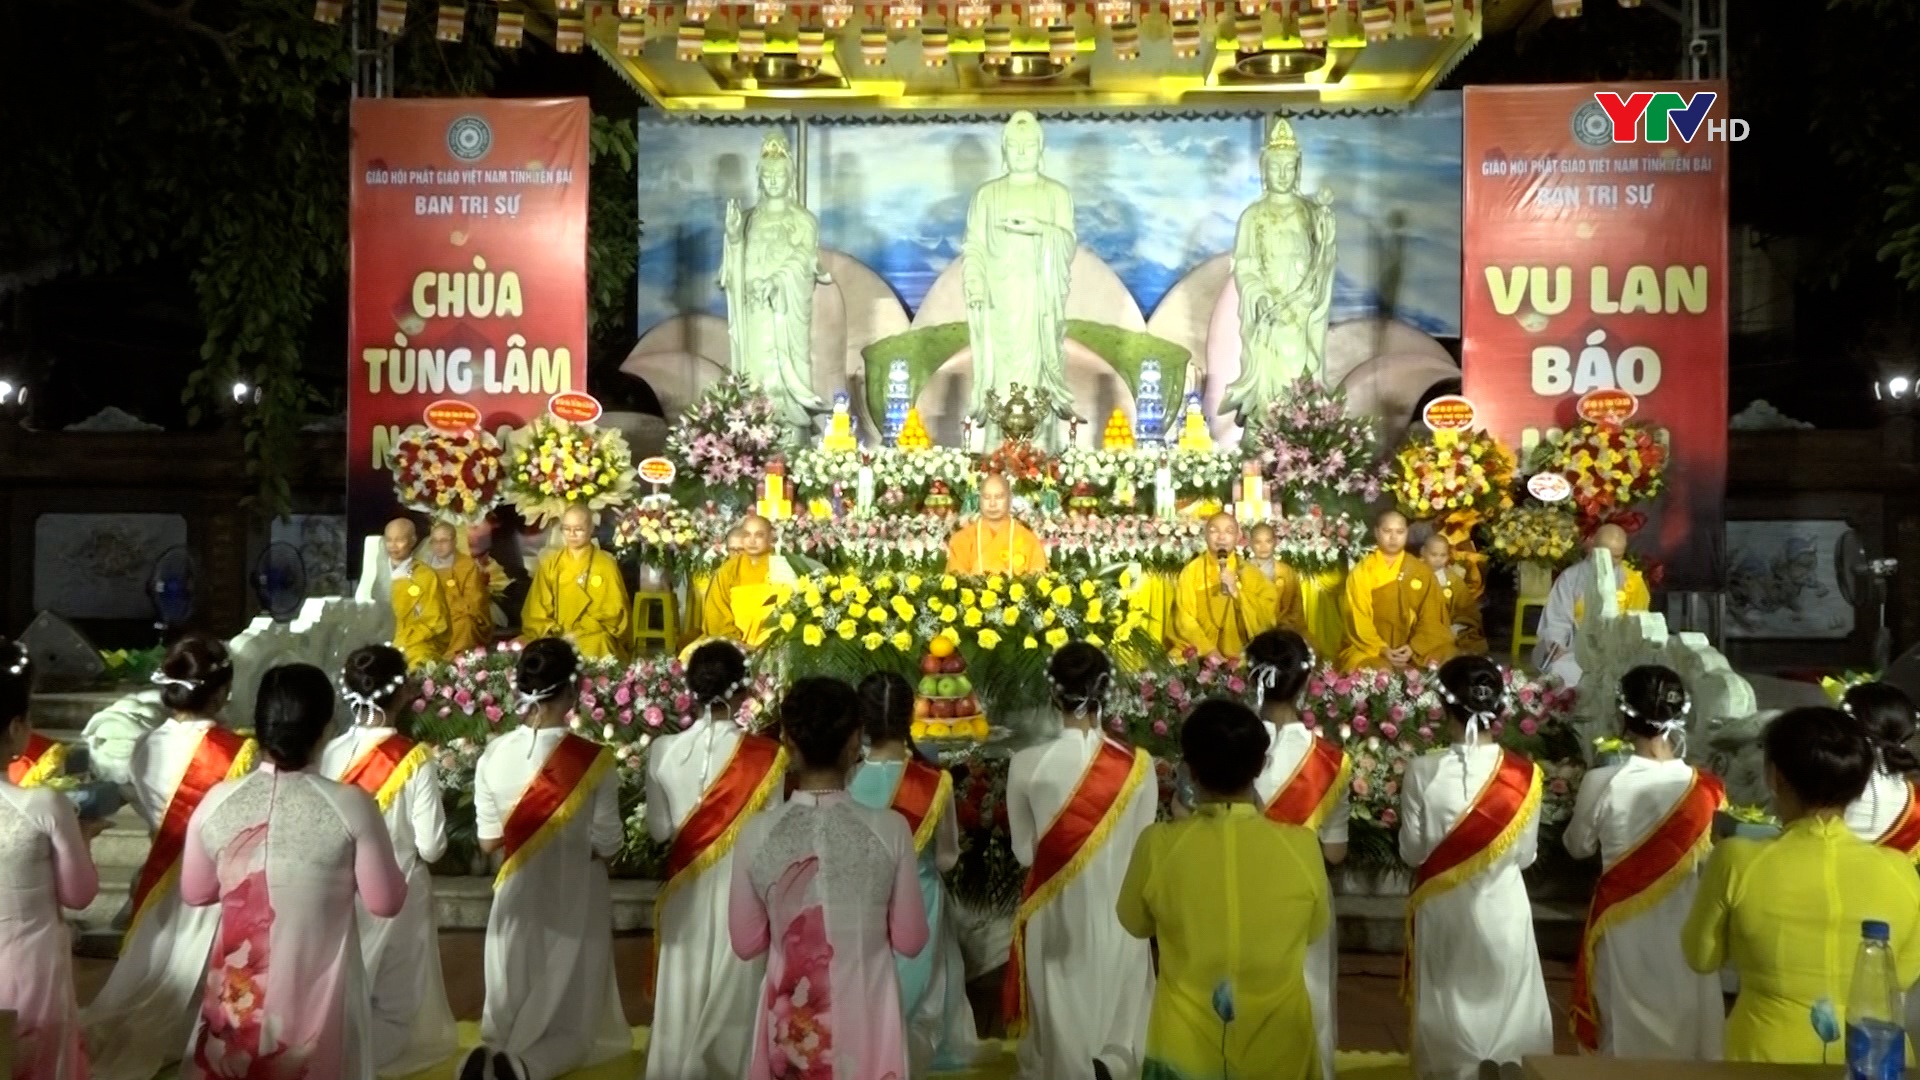 Đại lễ Vu lan báo hiếu tại chùa Tùng Lâm - Ngọc Am